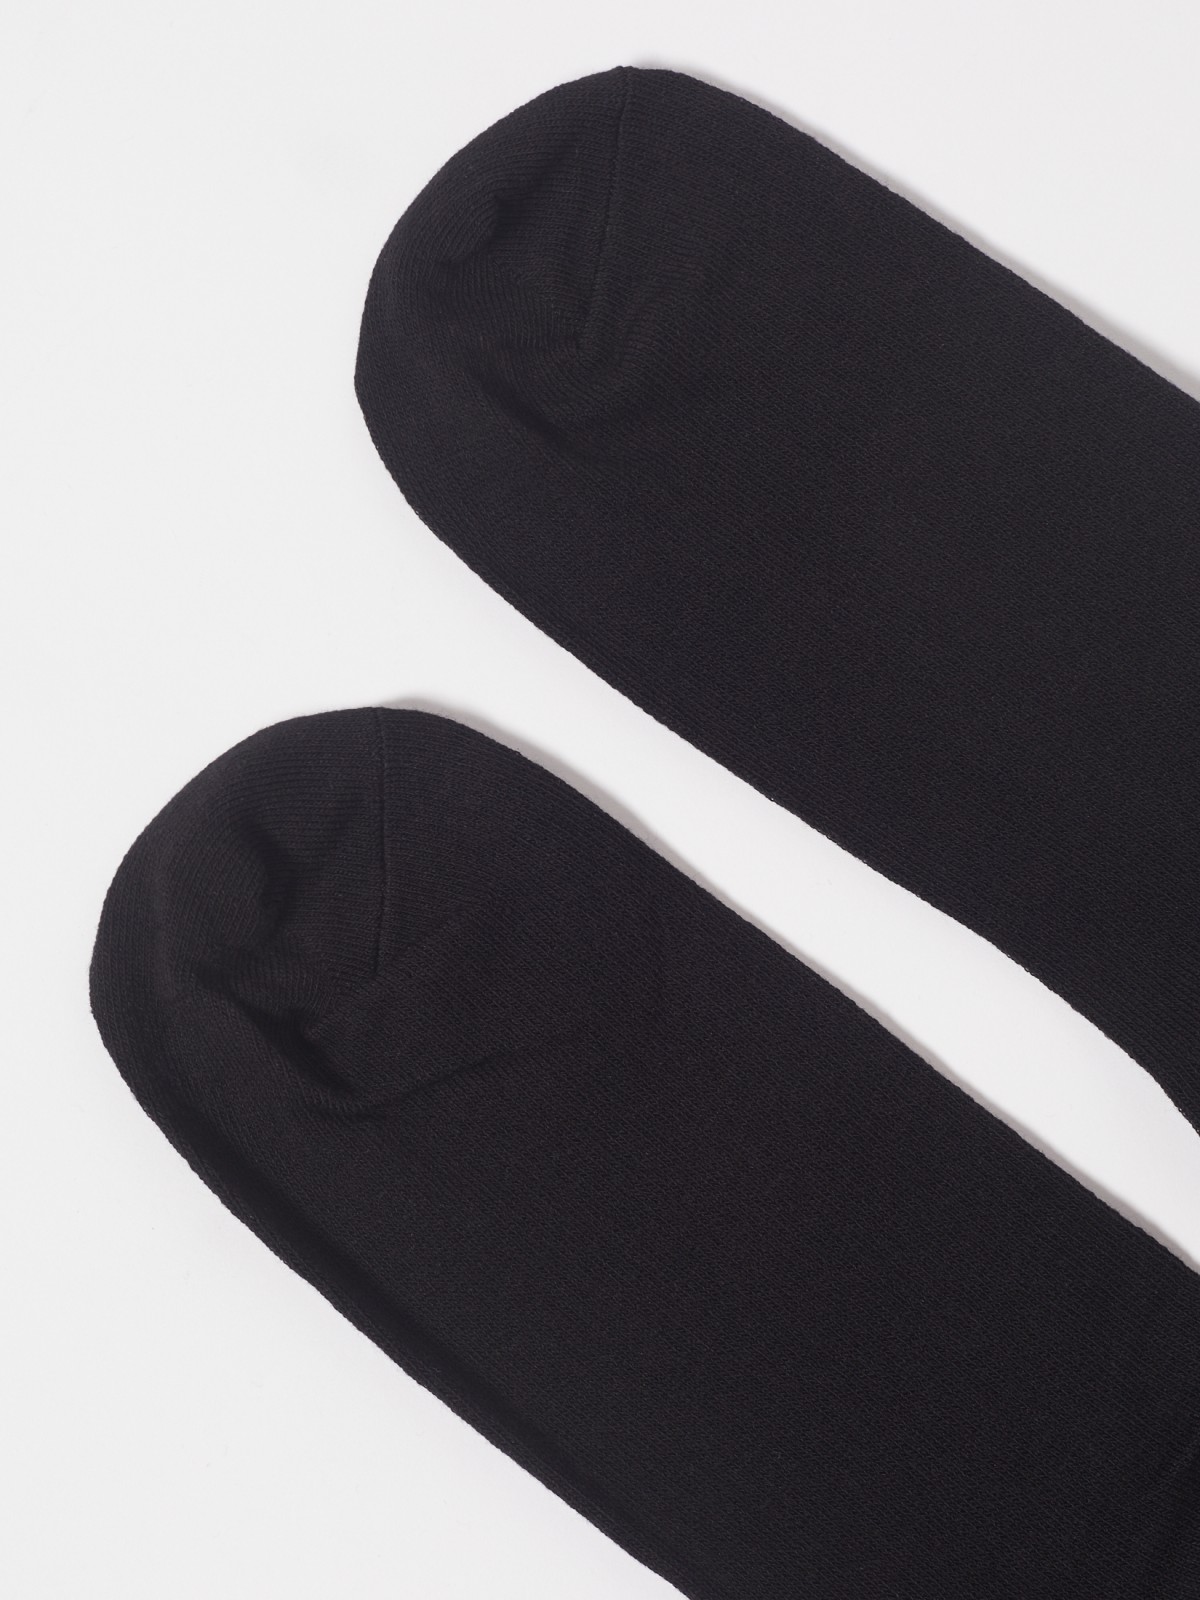 Набор высоких носков (3 пары в комплекте) zolla 01311998J185, цвет черный, размер 25-27 - фото 5